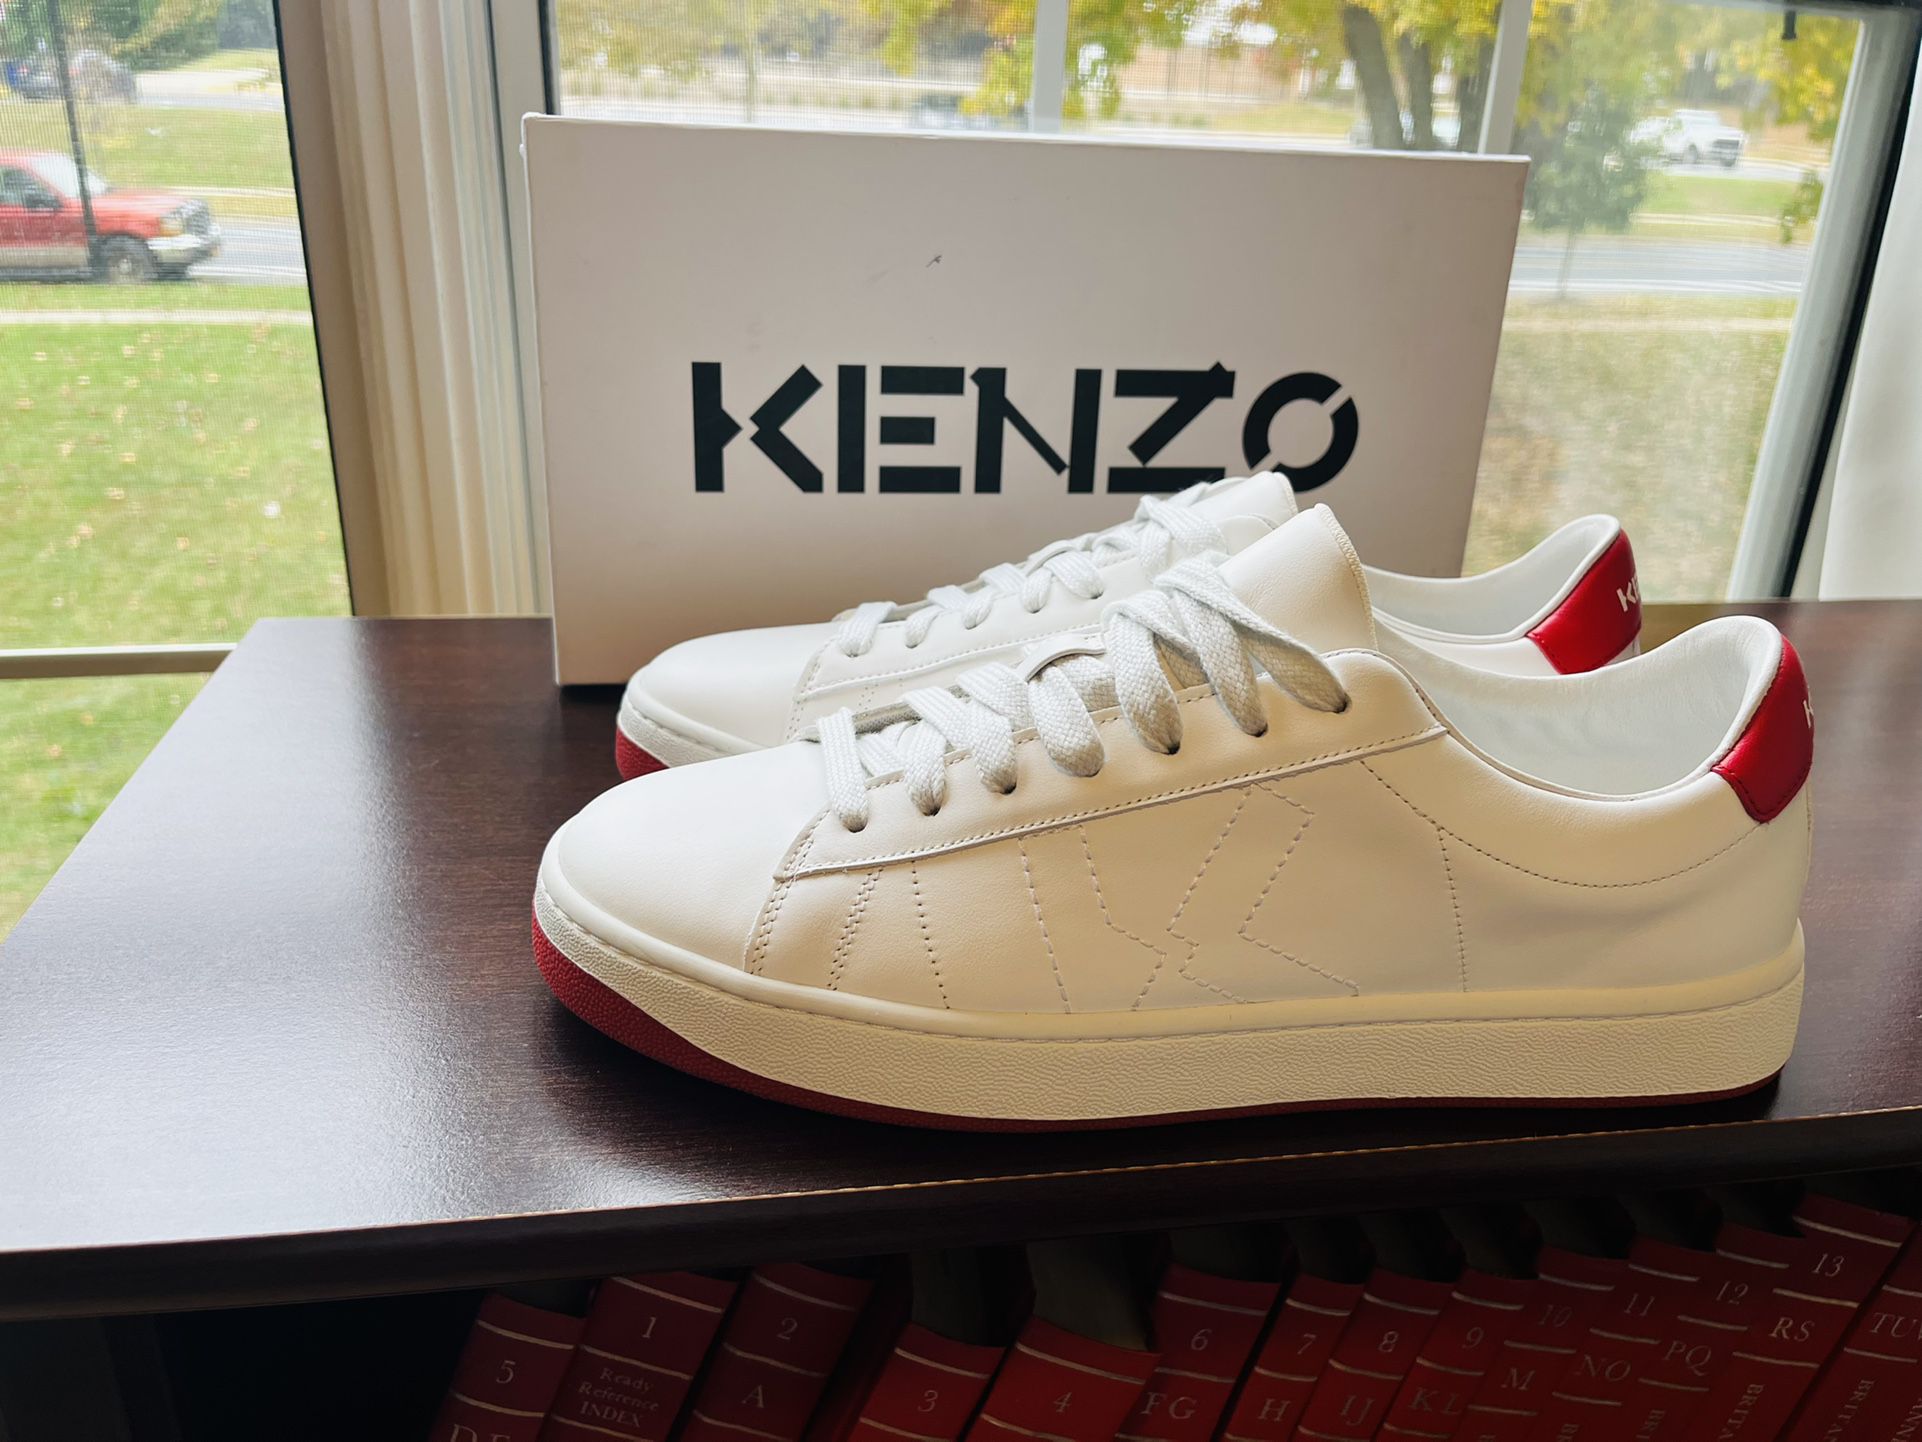 Kenzo Kourt Italian Sneakers Size 42 for Sale in Wheaton-glenmont, MD -  OfferUp